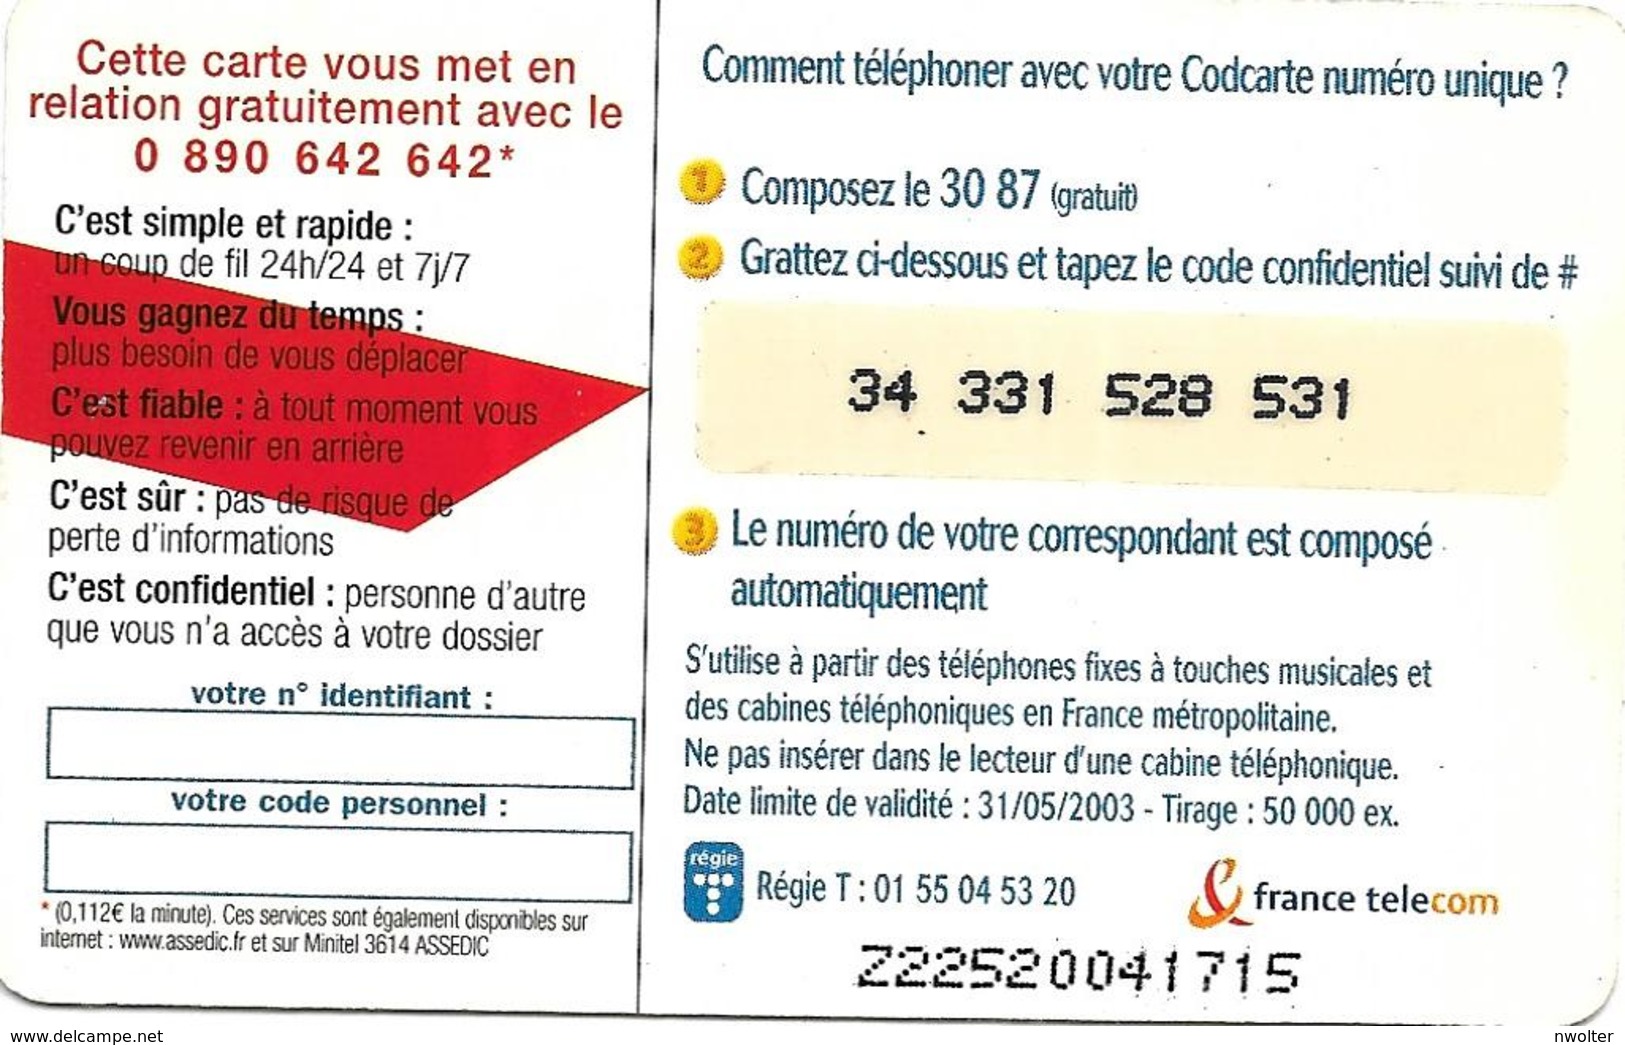 @+ Codcarte France Télécom - Unidialog Paris - 10min - Z22520041715 - Biglietti FT